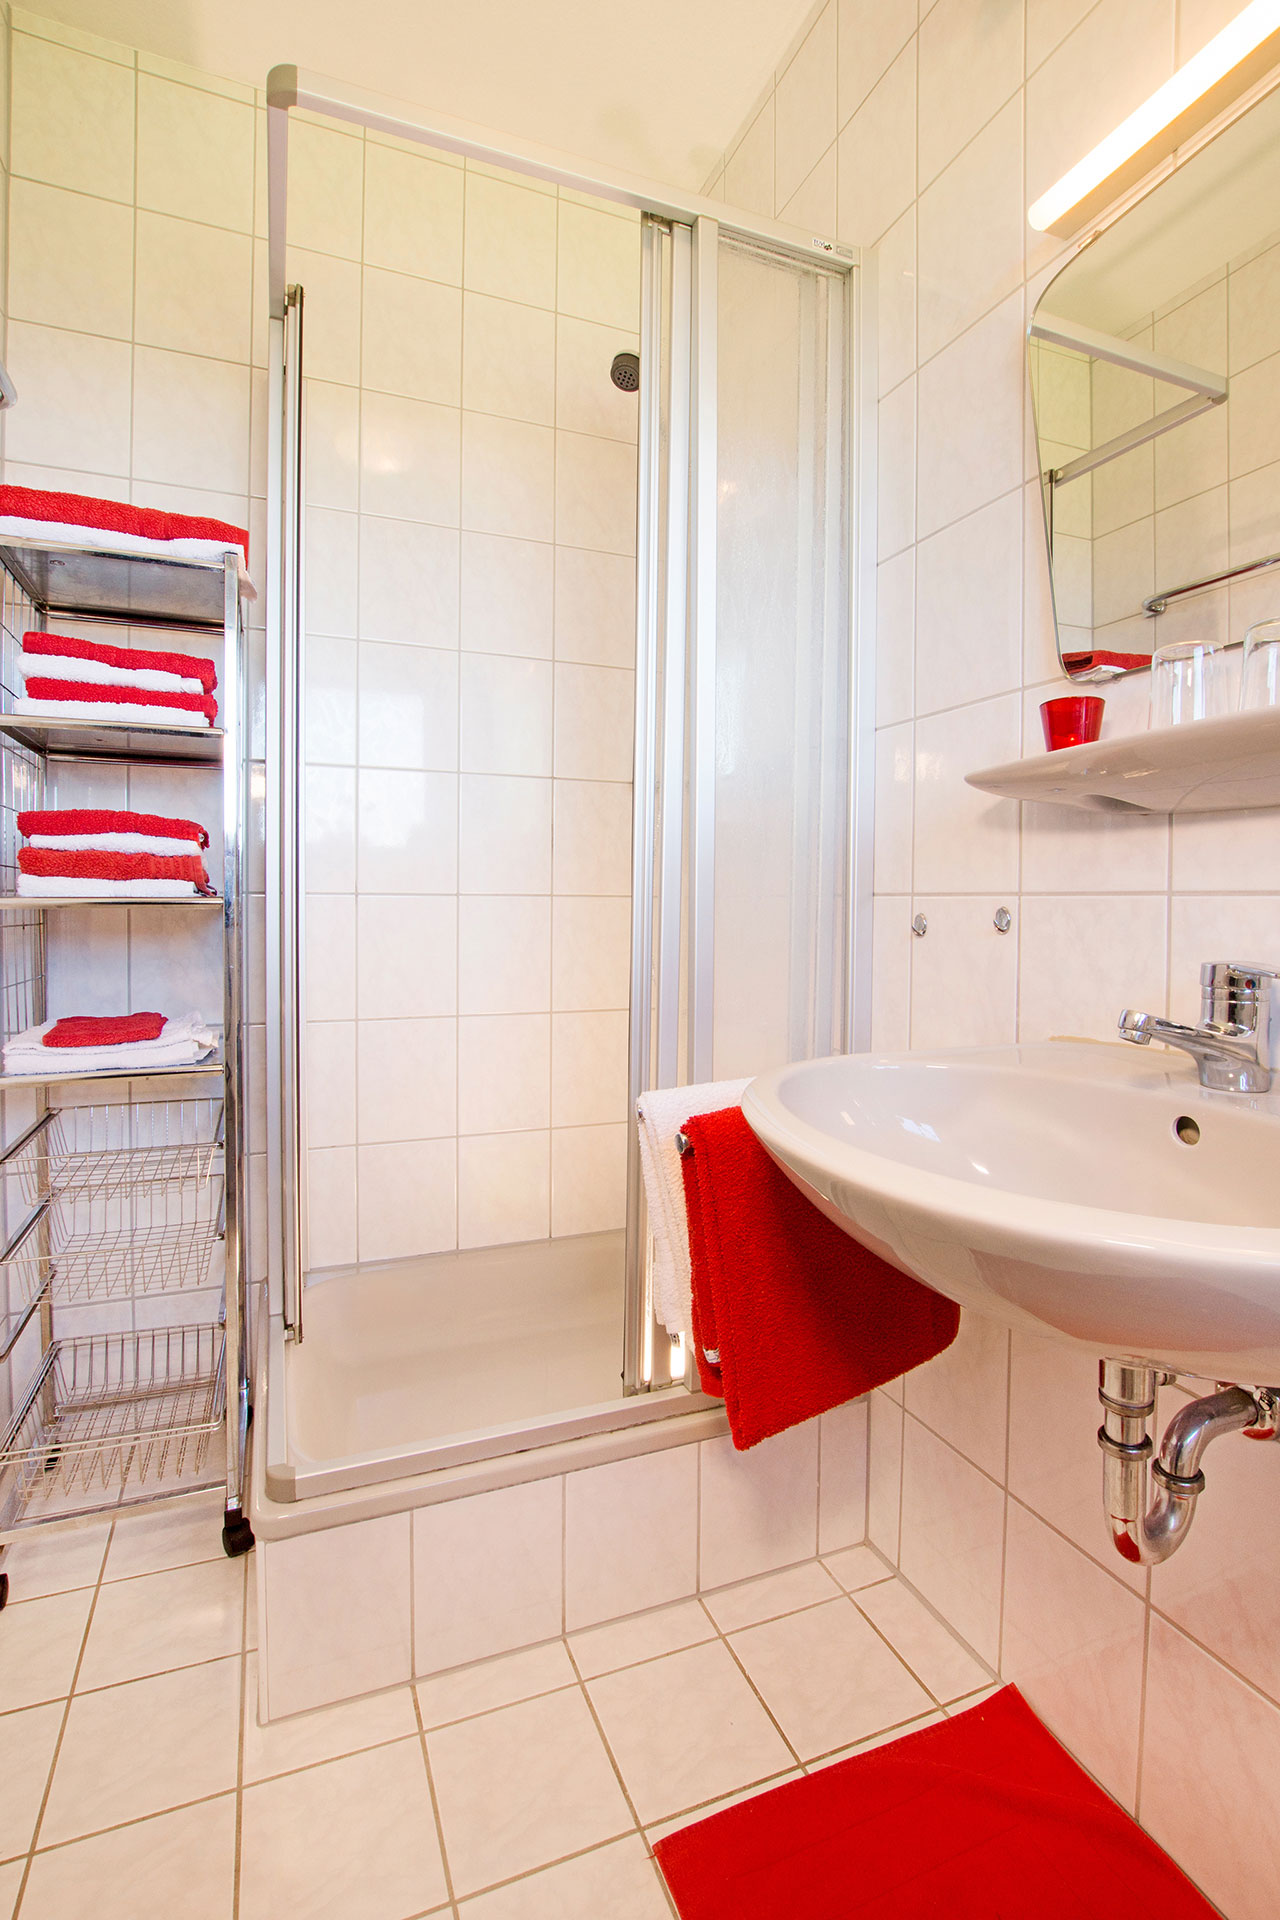 foto ferienwohnung nachher badezimmer hell freundlich mit roten handtüchern